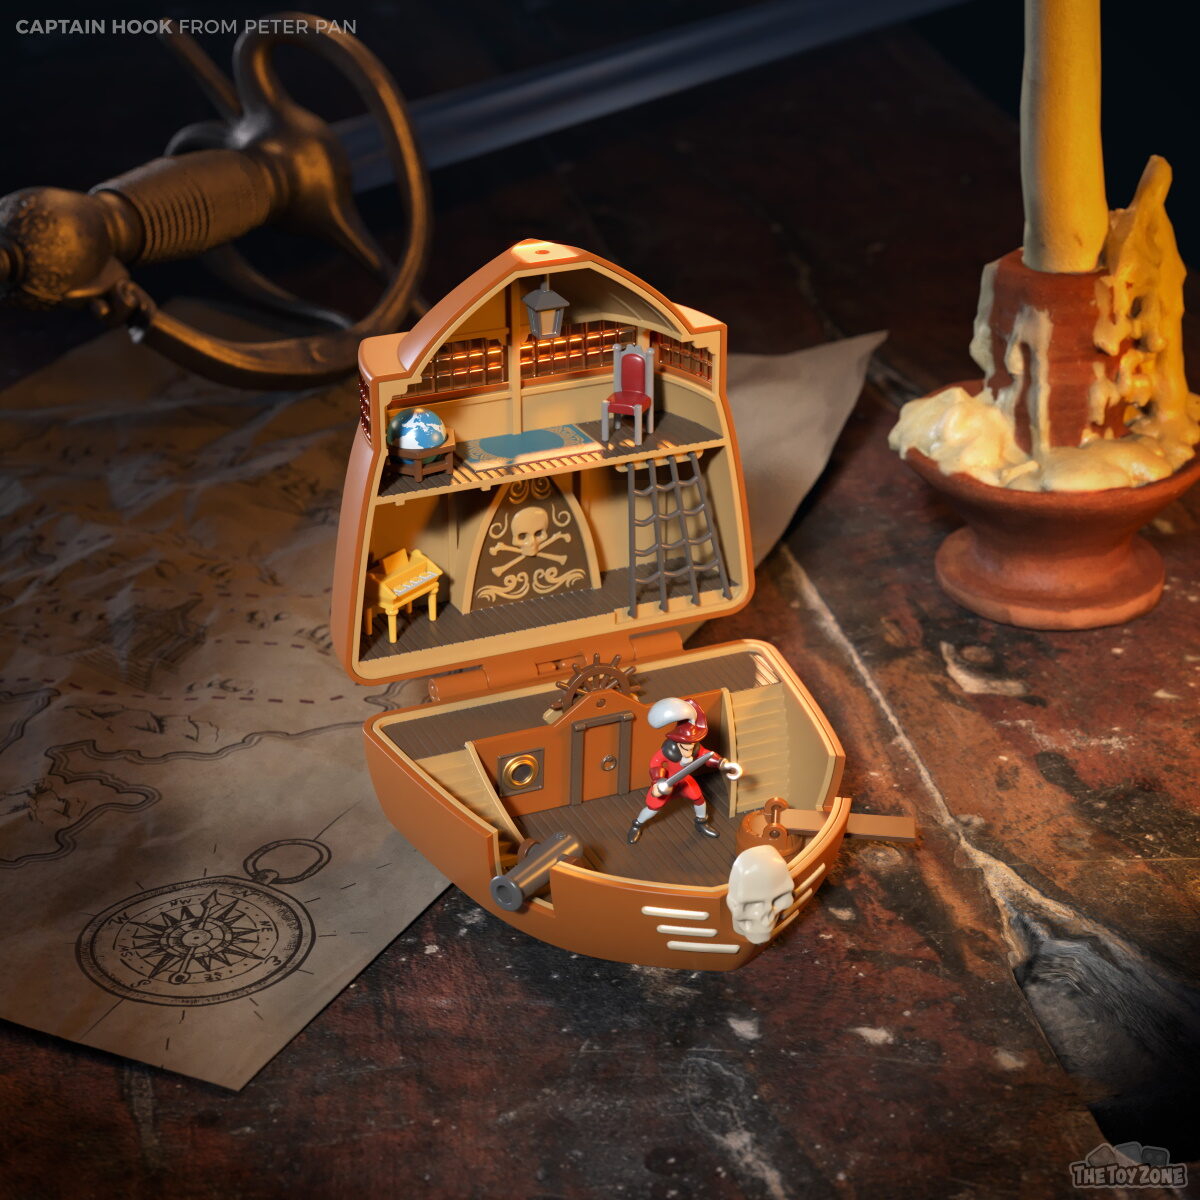 TheToyZone recreates Captain Hook's ship with Polly Pocket